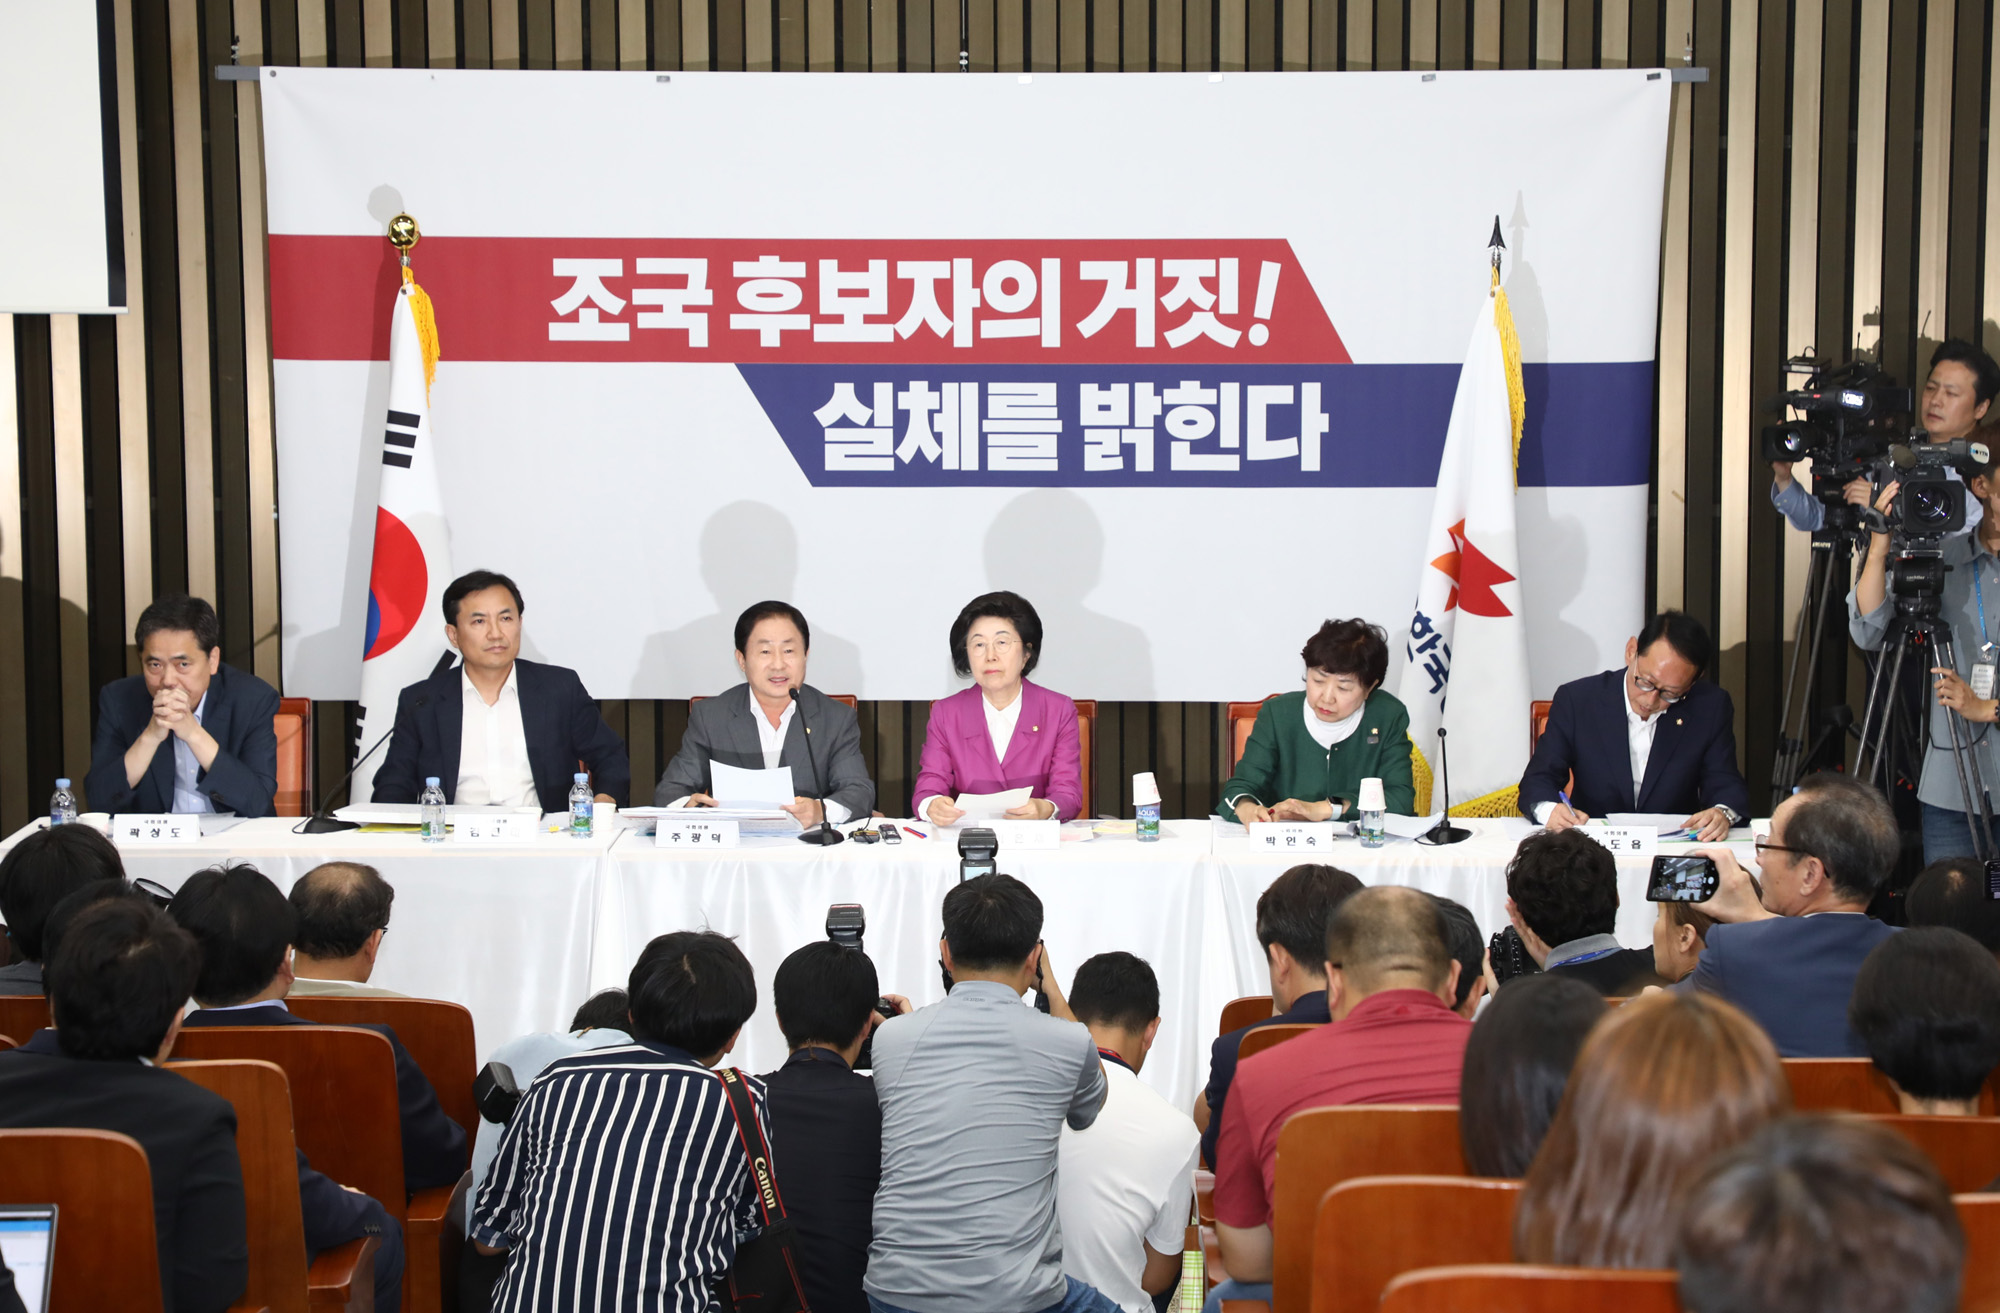 자유한국당;조국후보자실체를밝힌다;한국당반박기자간담회